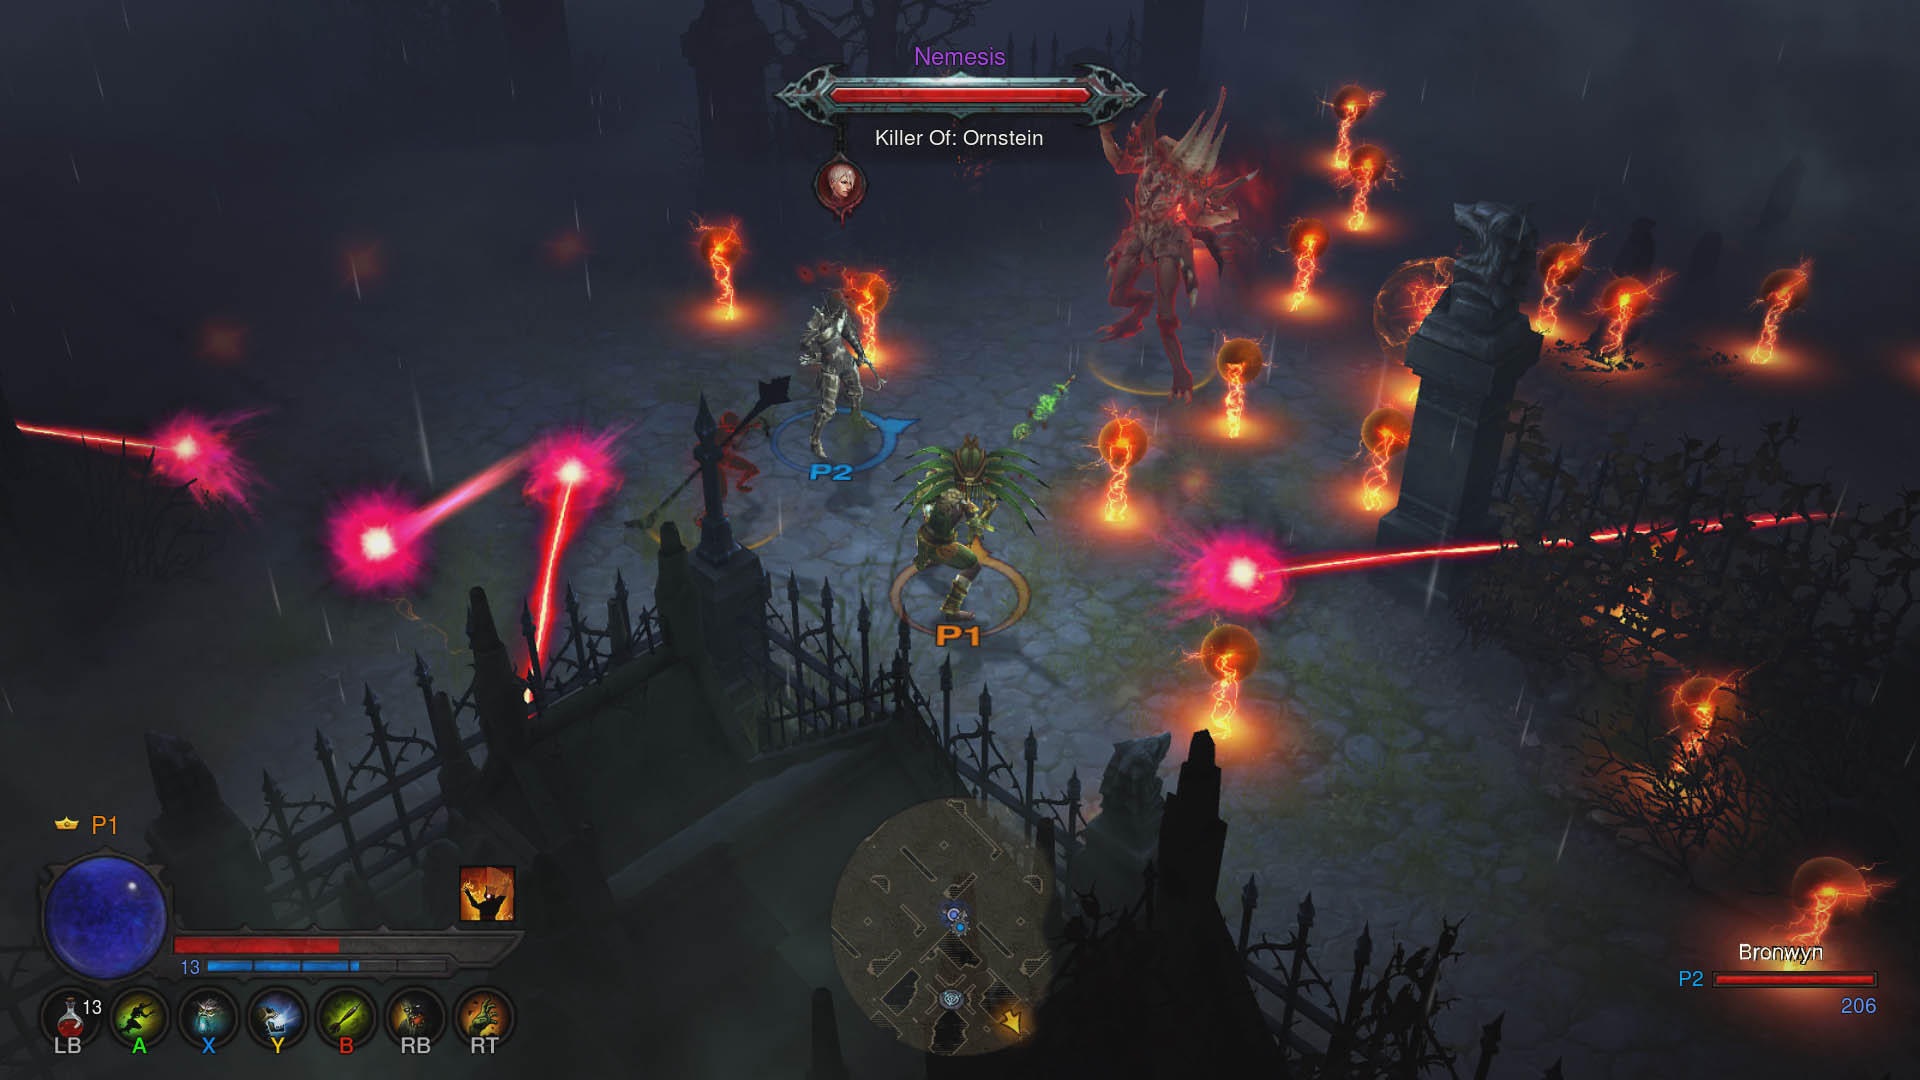 Diablo III: Ultimate Evil Edition Ako naberte schopnosti, nepriateov nenite len jednoduchie, ale aj efektnejie.